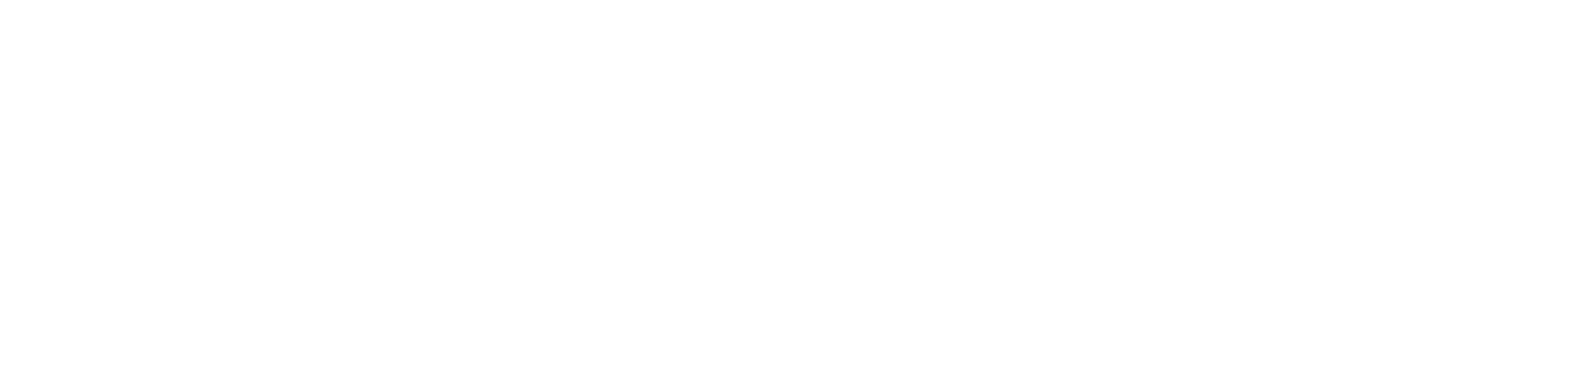 Holcim Group logo large for dark backgrounds (transparent PNG)